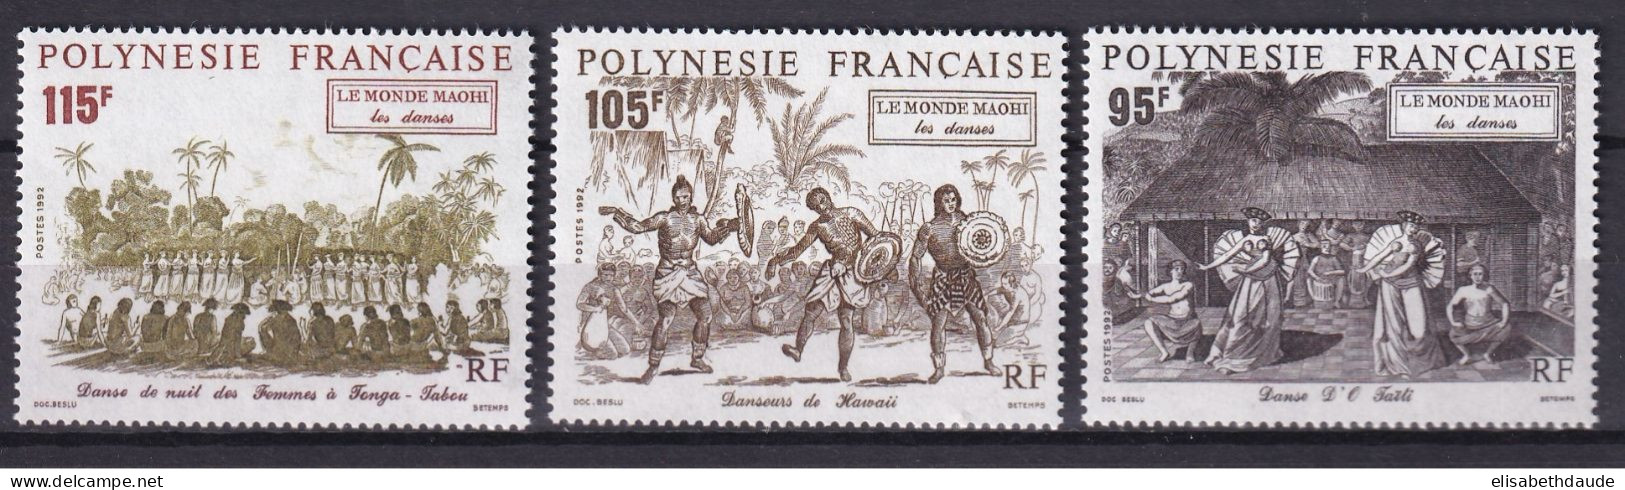 POLYNESIE - 1992 - PORT GRATUIT A PARTIR DE 5 EUR. D'ACHAT - YVERT N° 410/412 ** MNH - DANSES - COTE = 7.65 EUR. - Ungebraucht